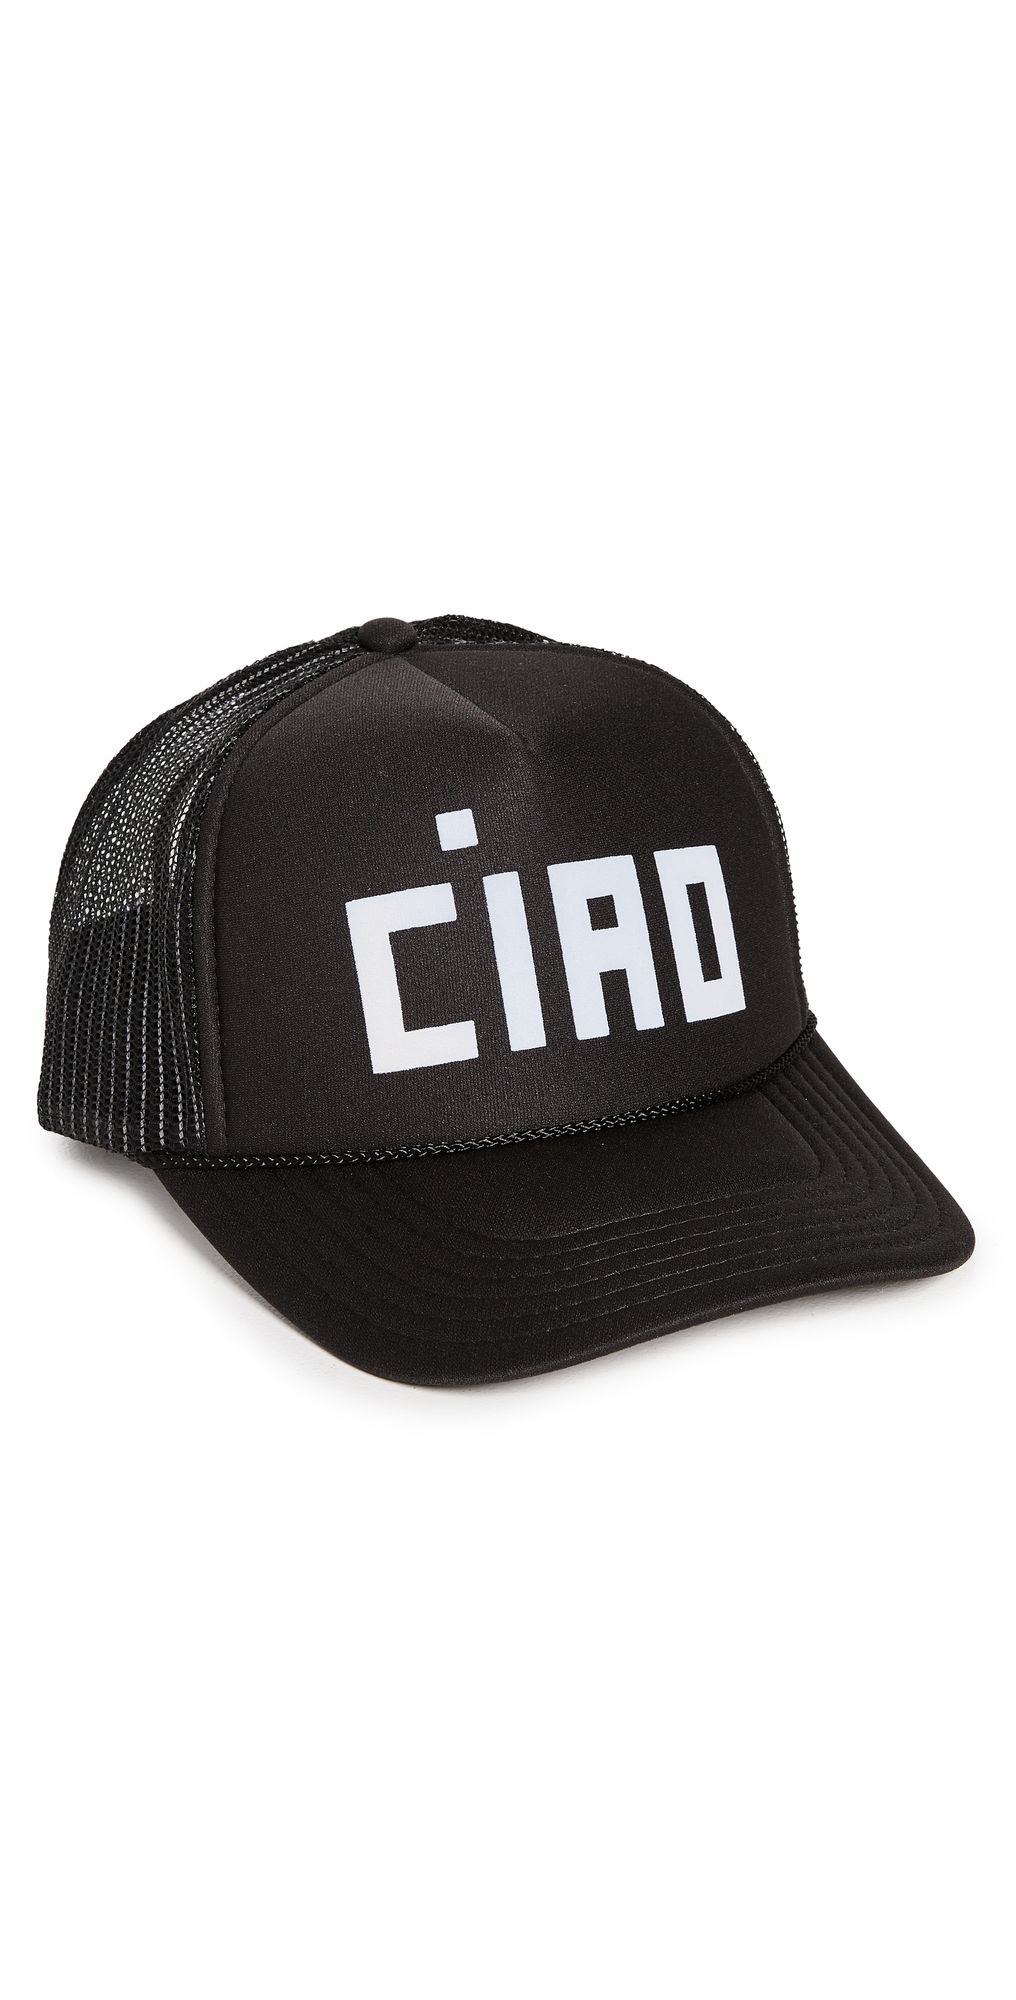 Ciao Trucker Hat | Shopbop